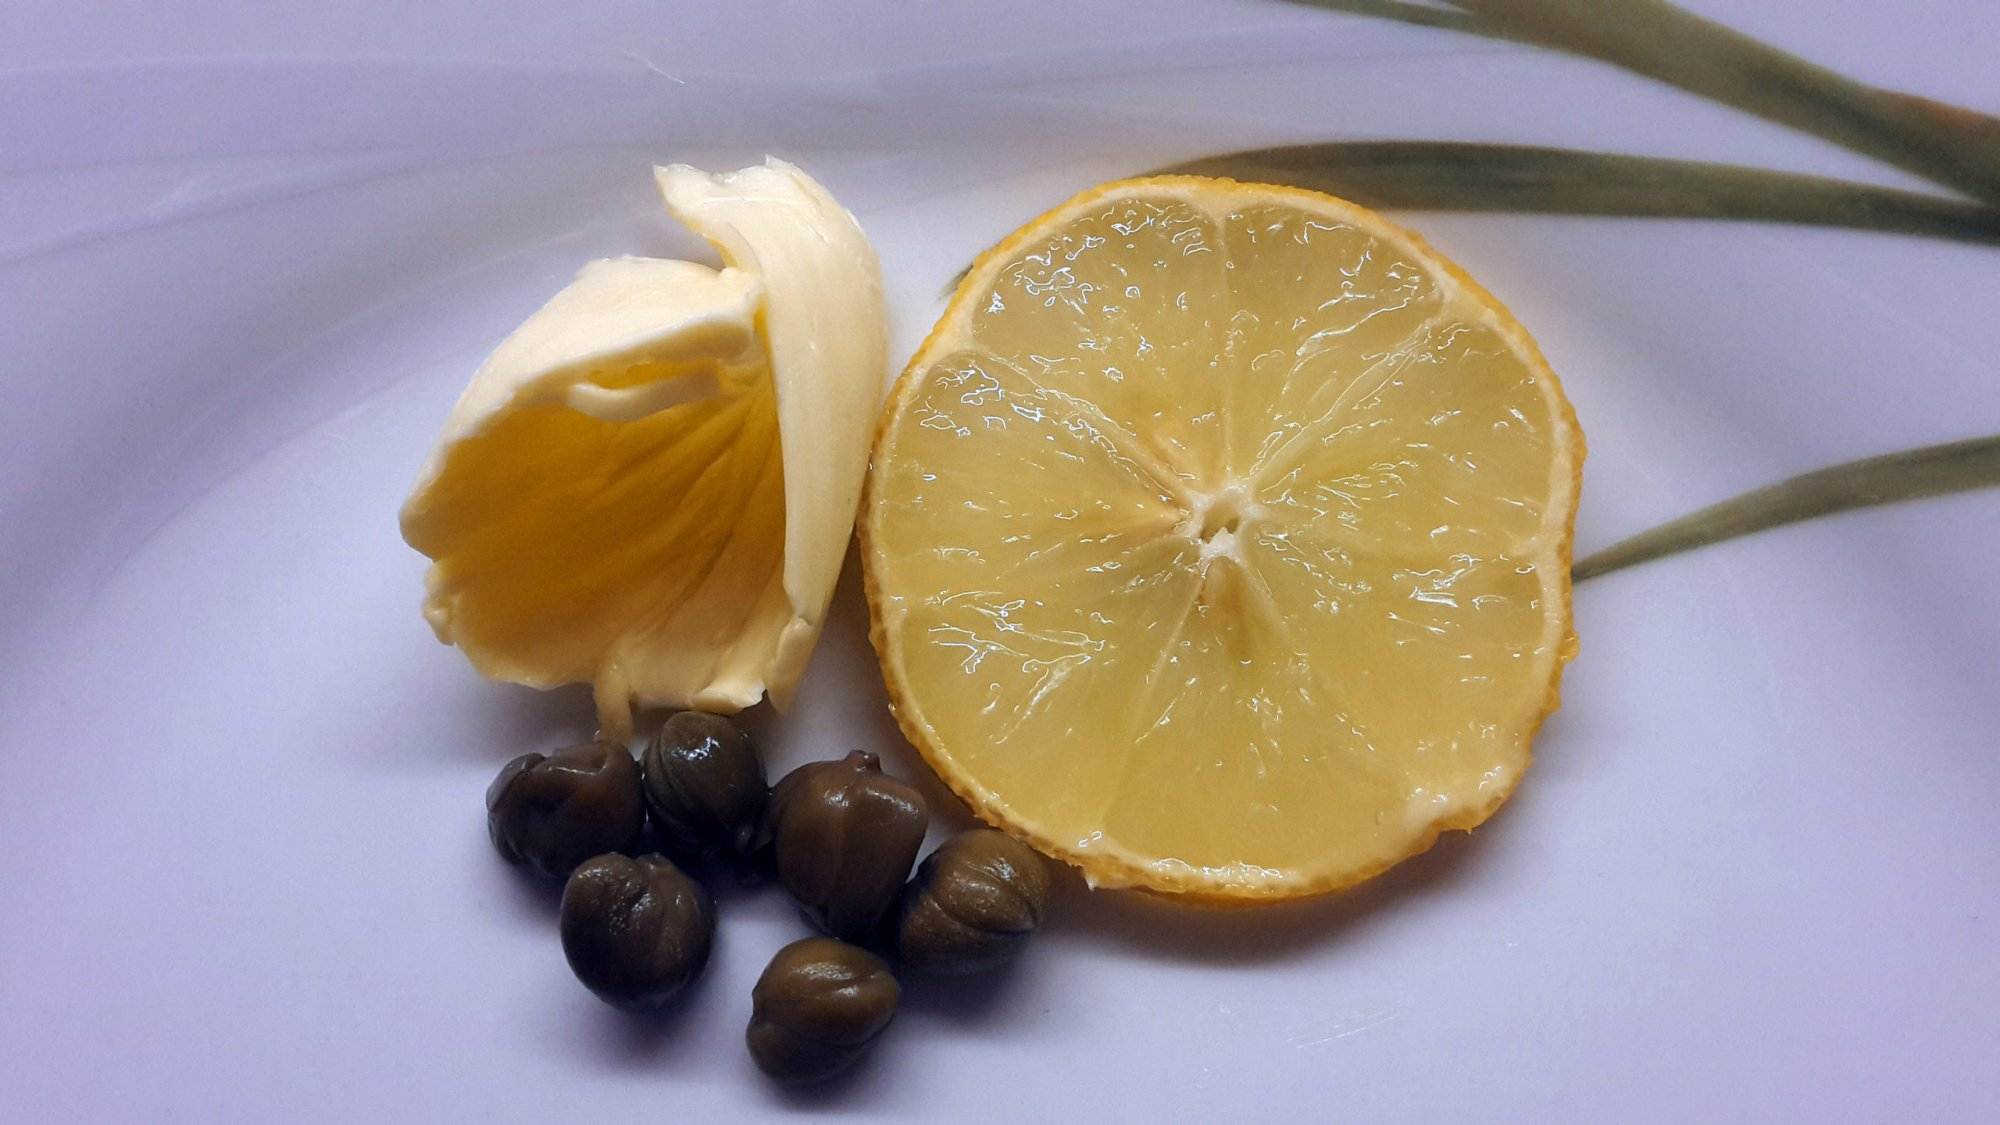 Eine Zitronenscheibe und schwarze Oliven auf einem weißen Teller.